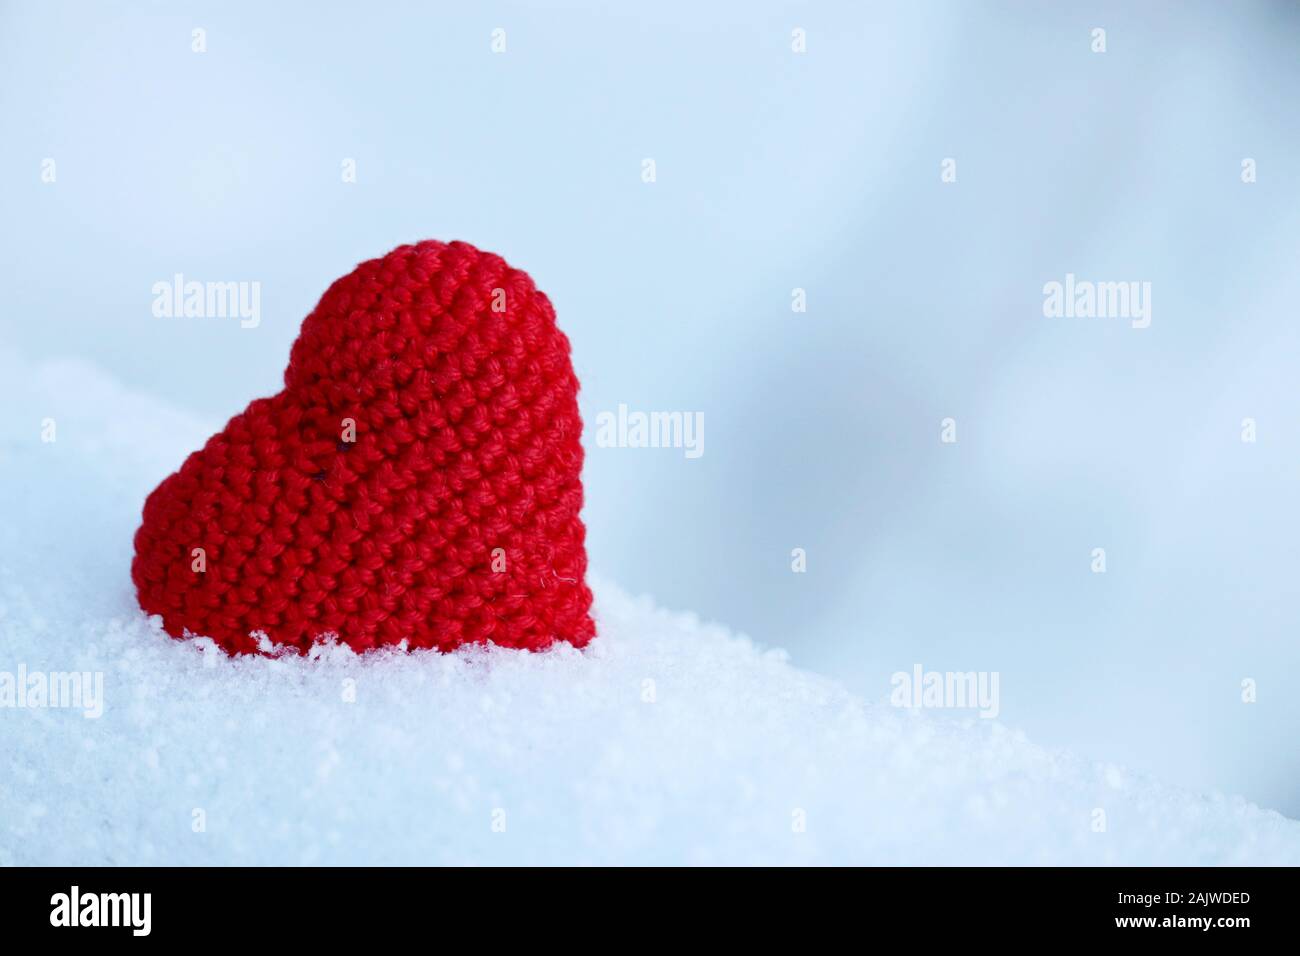 Liebe Herz, Valentinstag Karte, rote gestrickt, Symbol der Leidenschaft in den Schnee. Hintergrund für romantische Veranstaltung, Feier oder Winter Wetter Stockfoto